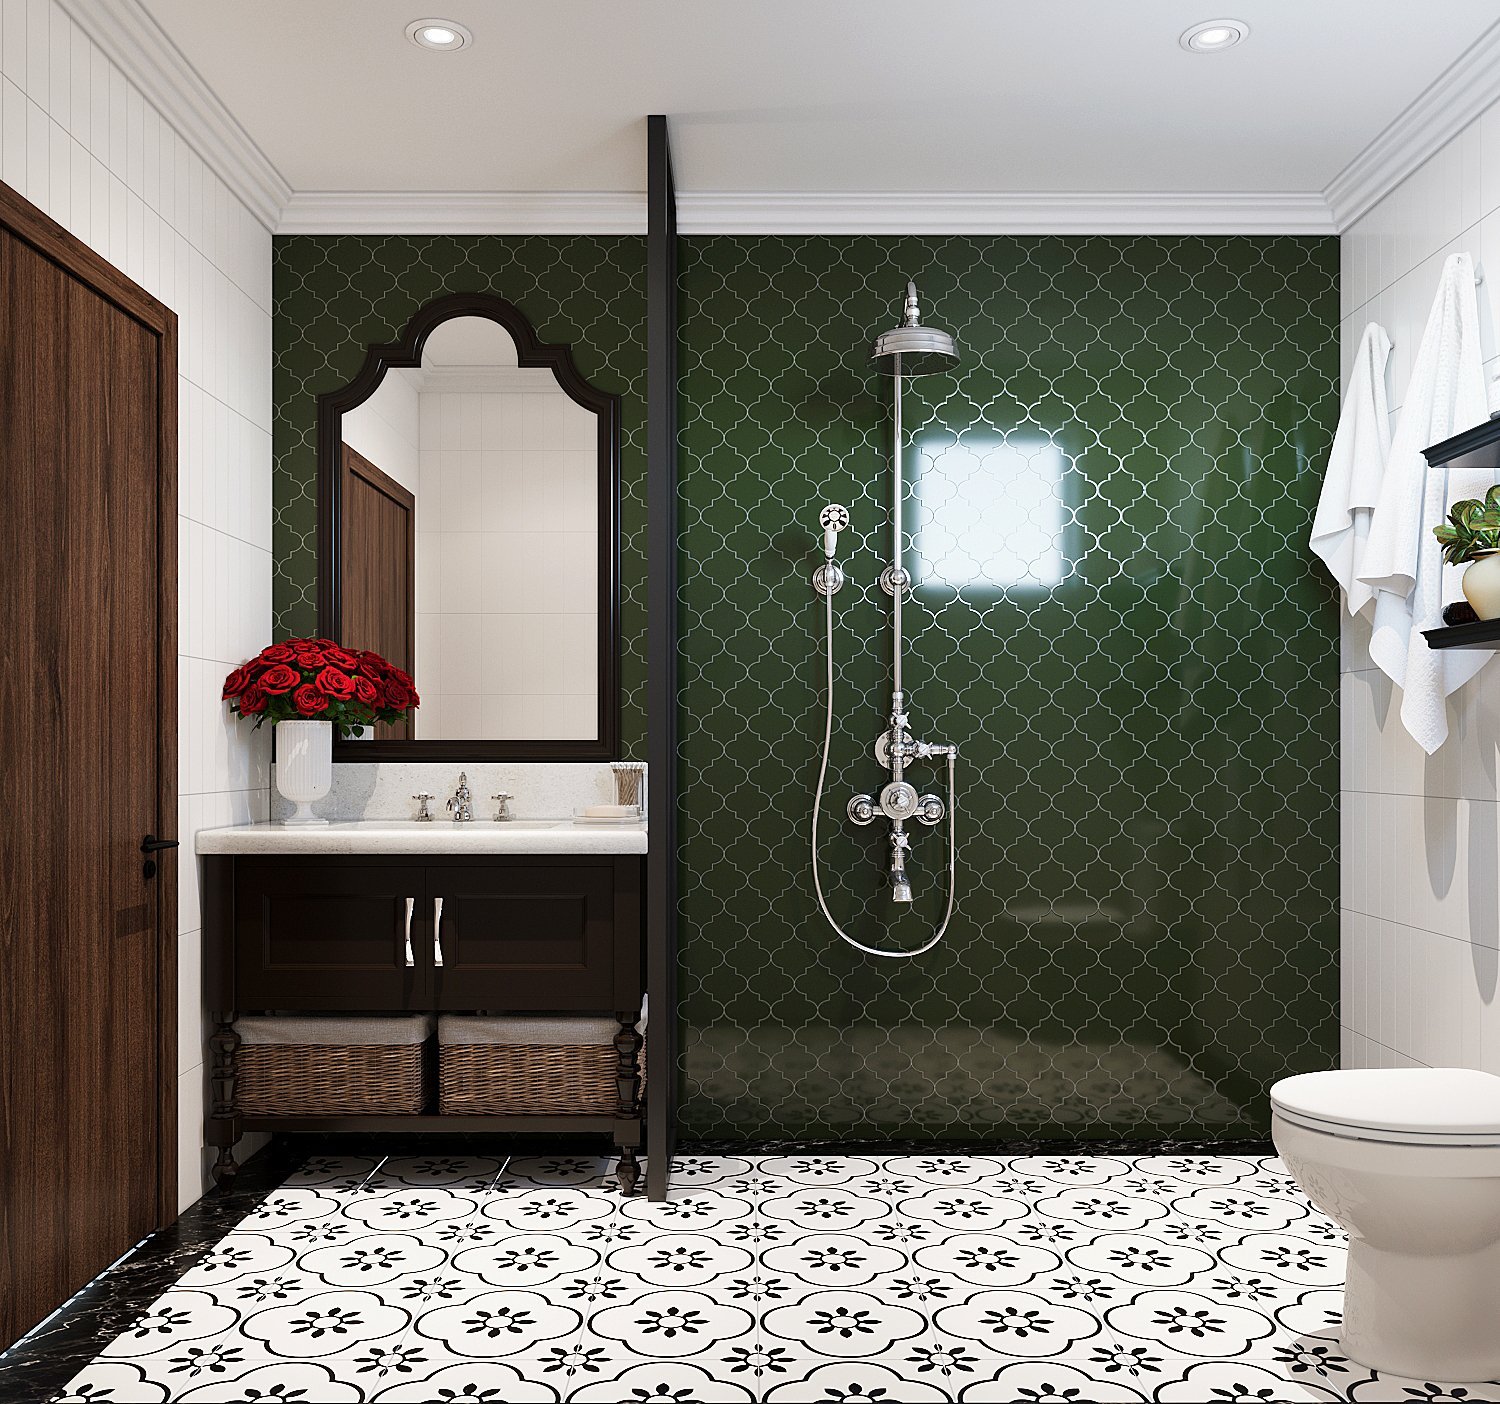 Khu vực tắm vòi sen được định vị bởi bức tường ốp gạch màu xanh lá đậm. Tông màu này cũng giúp tăng chiều sâu cho phòng tắm nhà vườn.